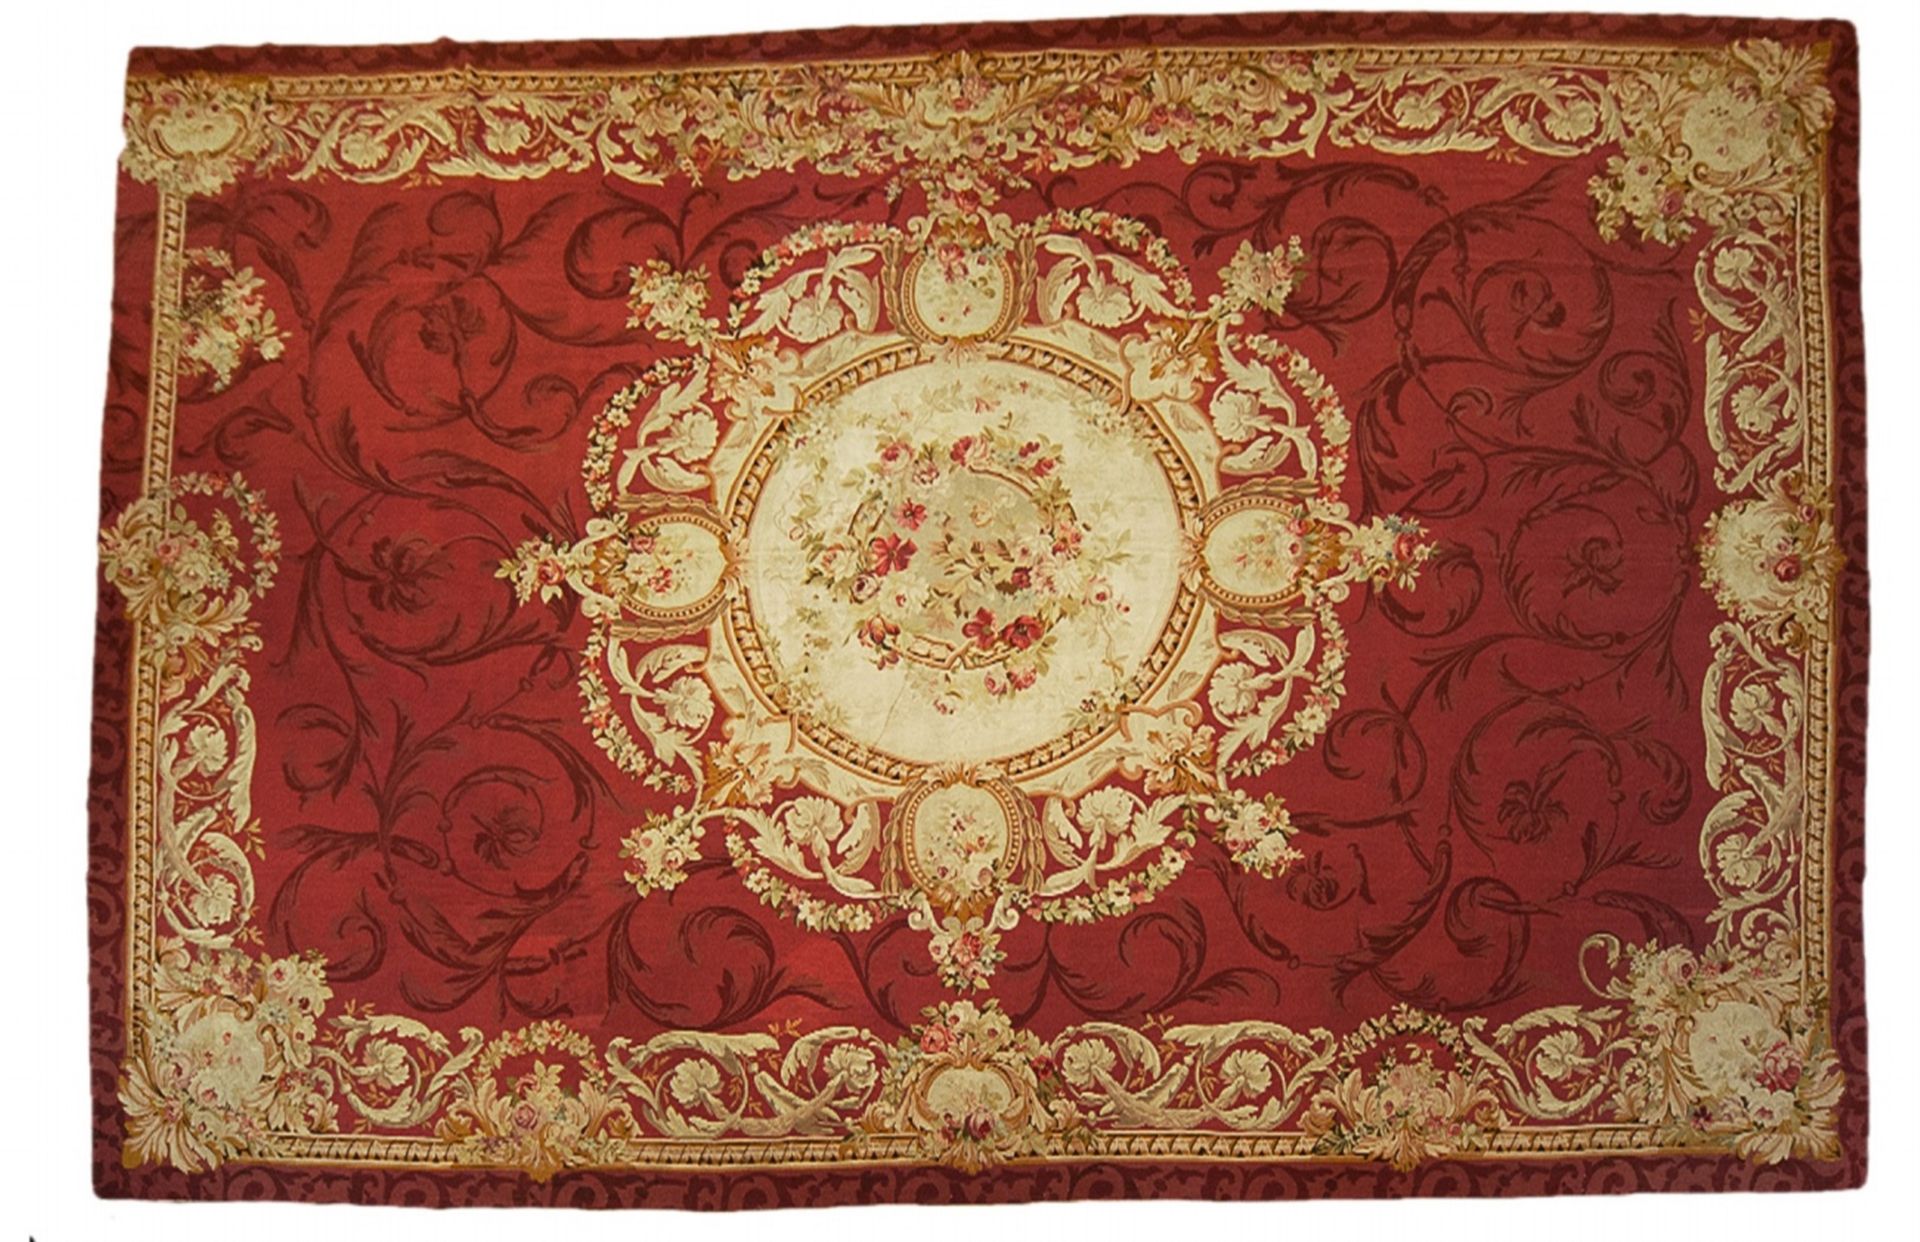 A large asymmetrical Aubusson fin de siècle medallion carpet